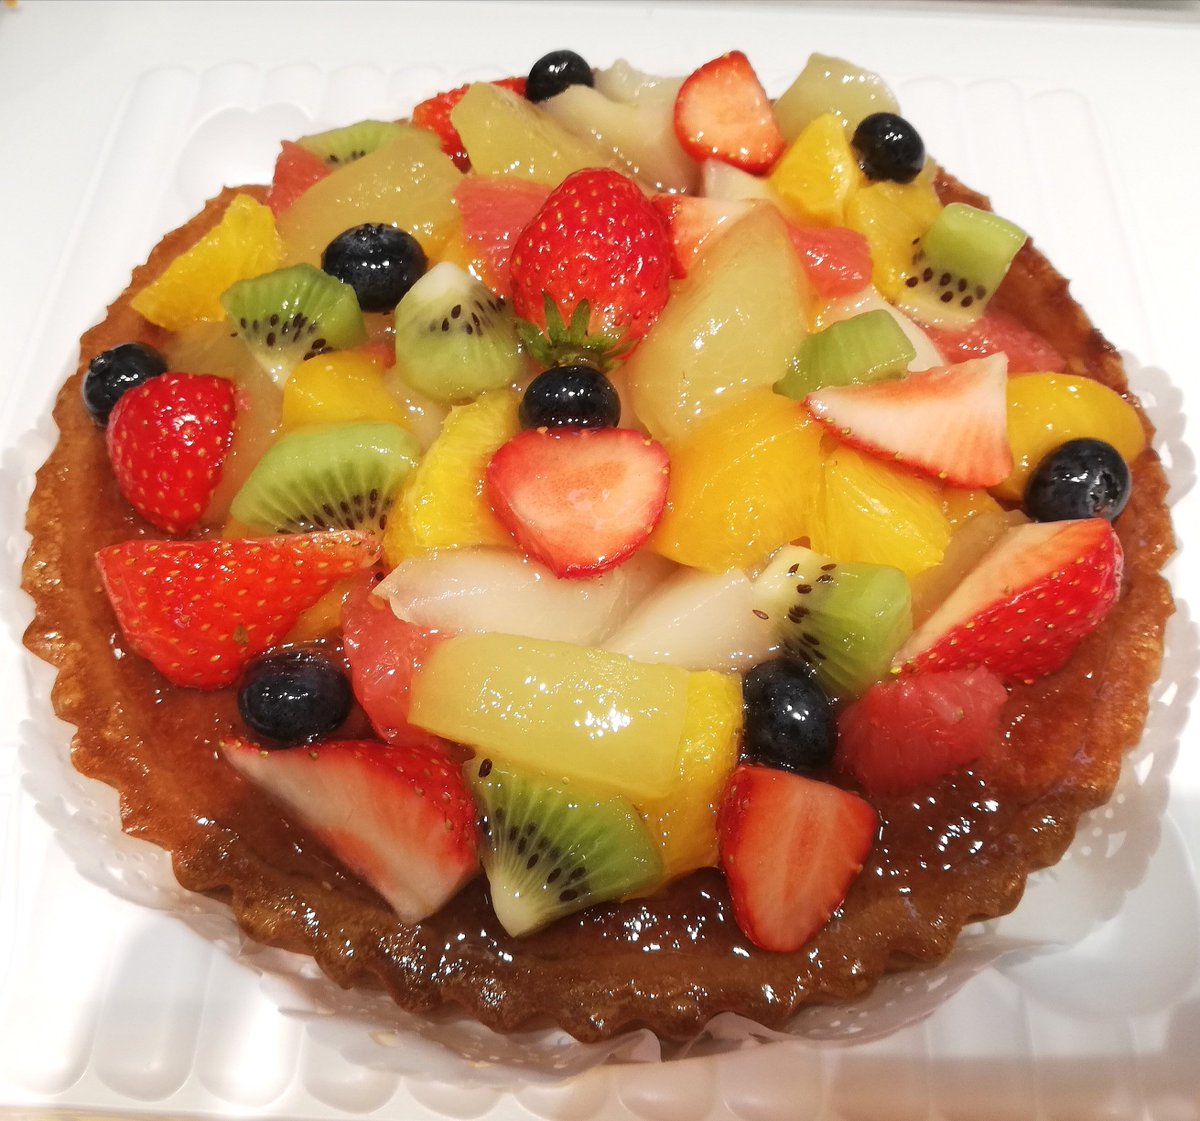 月刊 神田画報 Na Twitteru 地下鉄 神保町駅ナカにオープンしたケーキ屋さんで初めてのお買い物 フルーツタルトを買ってみました 自分の口には一口も入っていませんけど